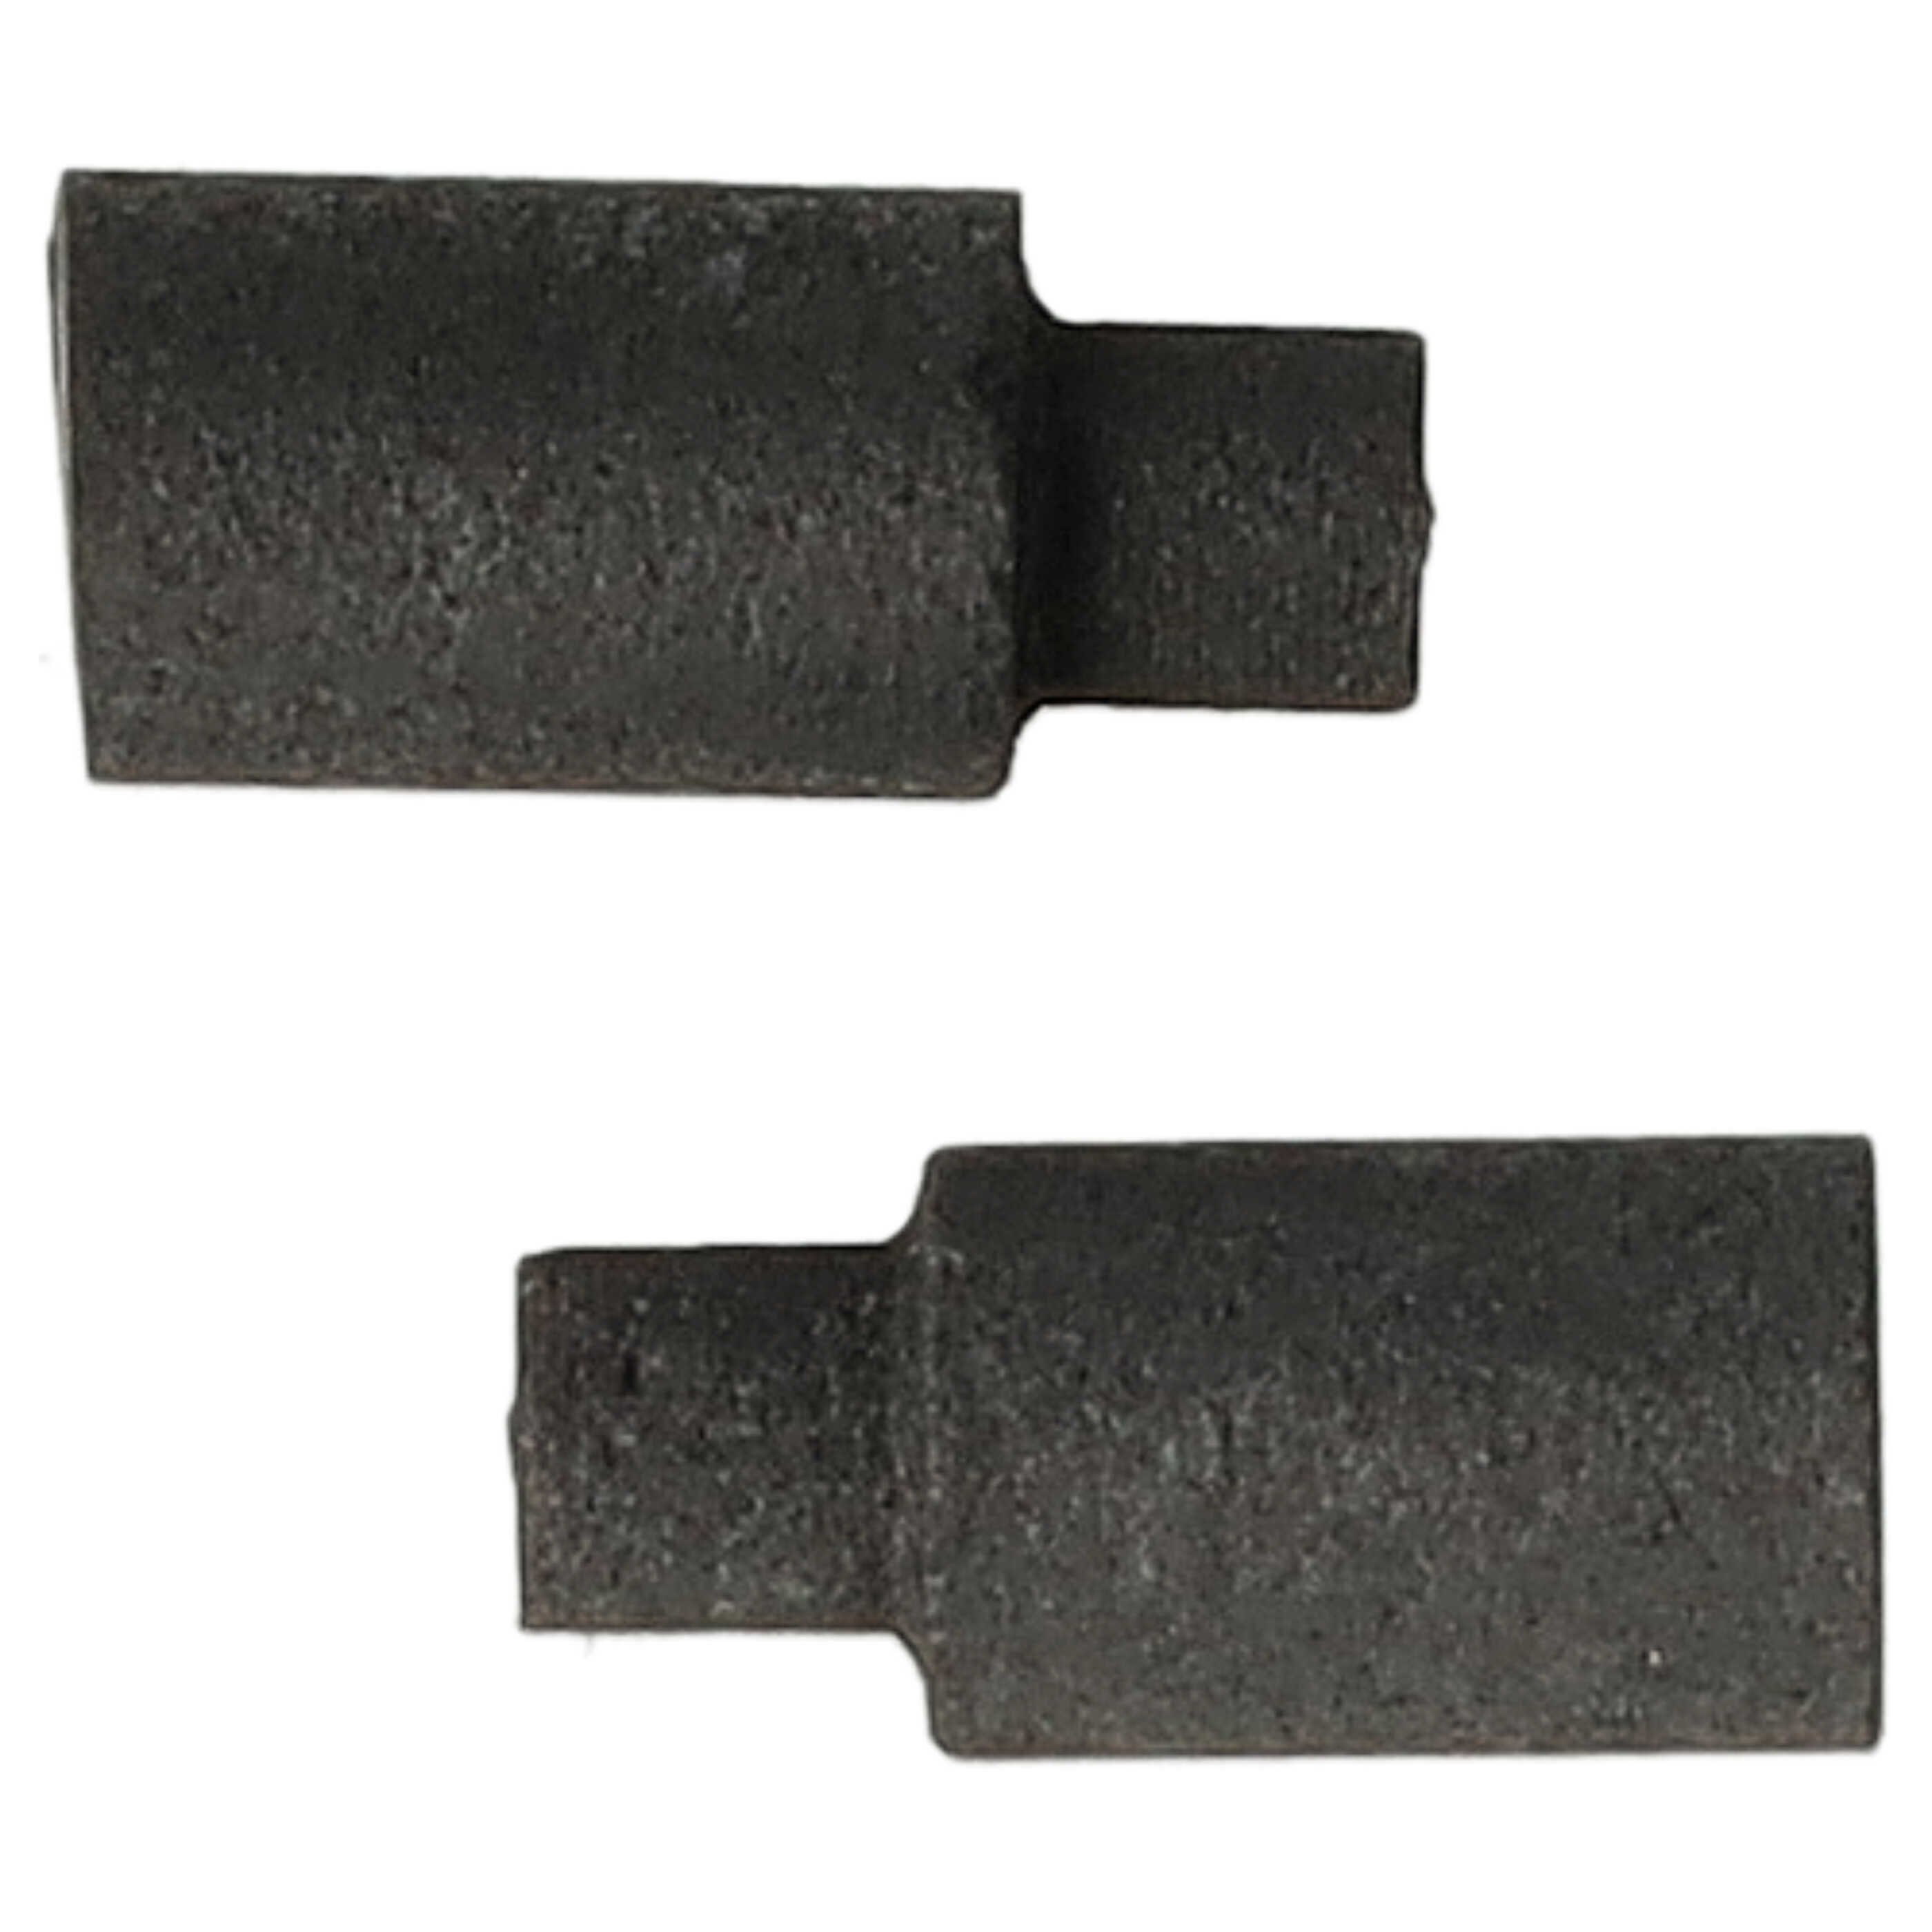 2x Kohlebürste als Ersatz für Roco 89743 für Elektrowerkzeug - 3 x 2 x 6,5mm